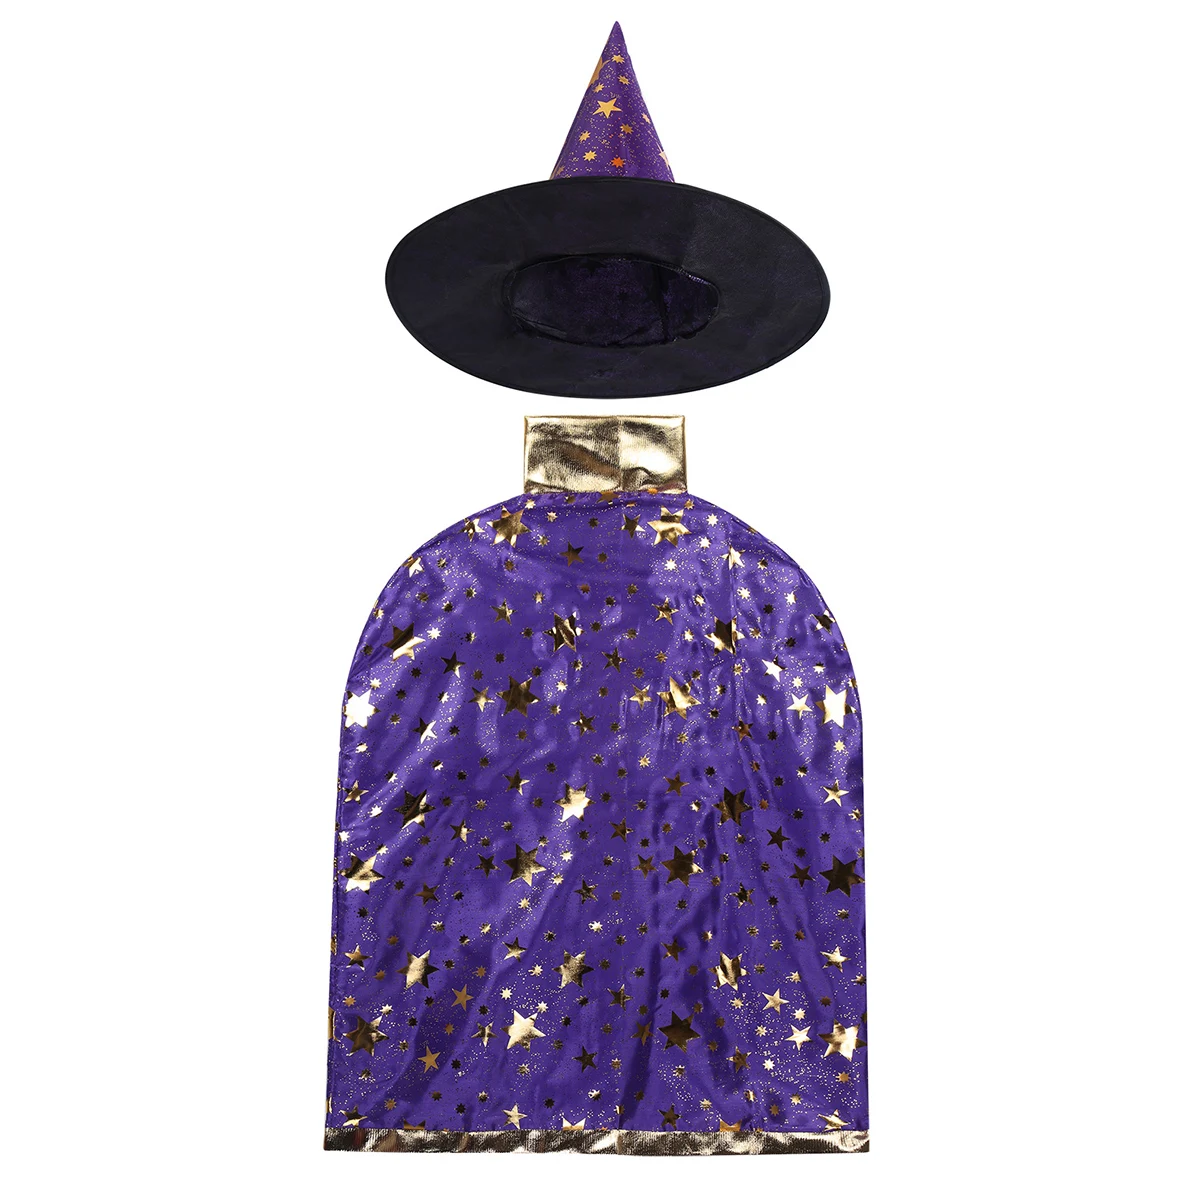 FEESHOW Детский костюм волшебника ведьмы на Хэллоуин плащ-накидка для мальчиков и девочек с шапочкой для костюмированной вечеринки